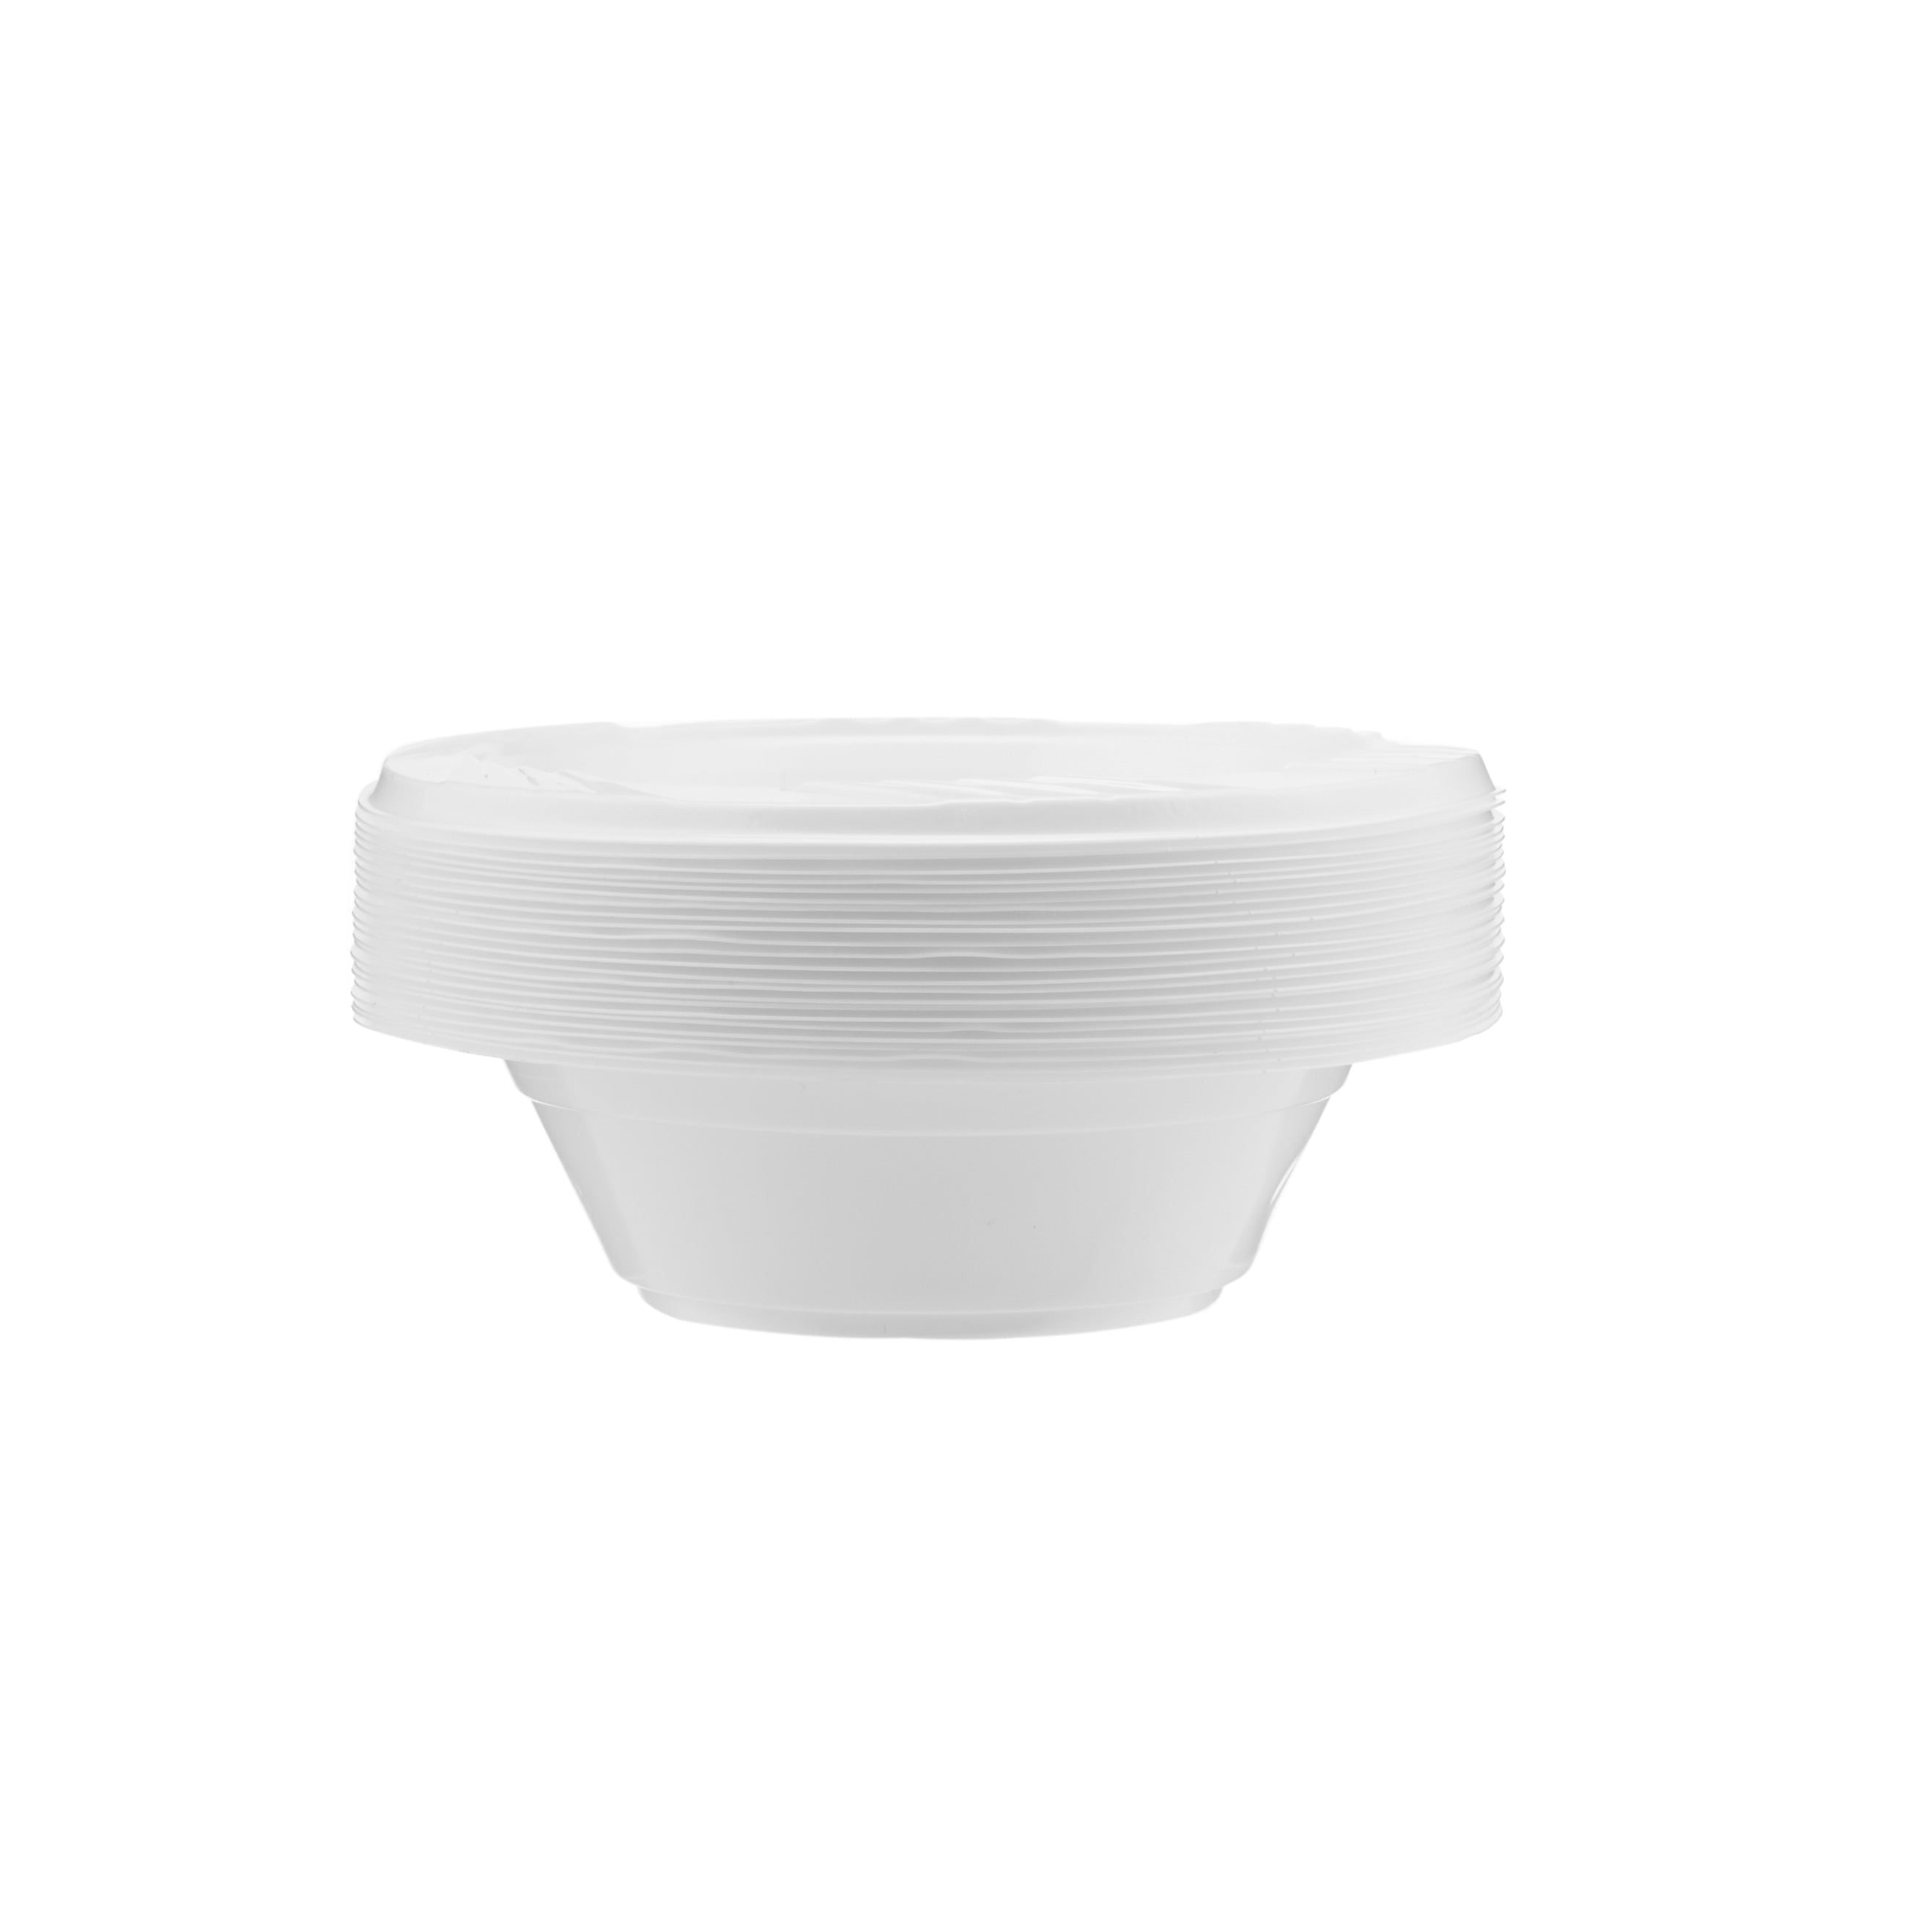 25 Pieces White Plastic Bowls 8 Oz